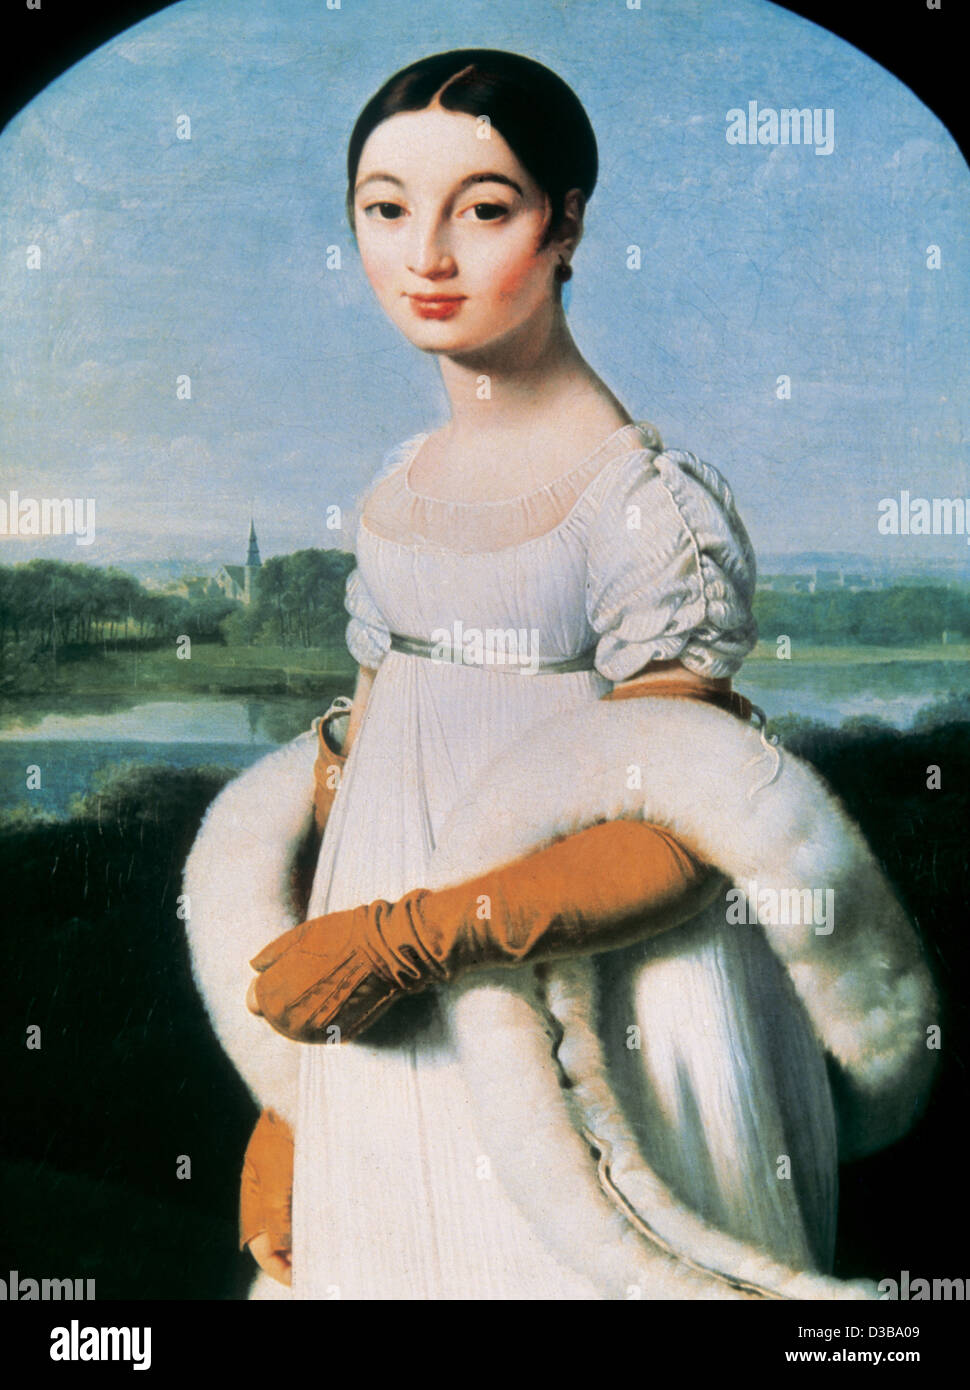 Jean Auguste Dominique Ingres (1780-1867). Le peintre français. Portrait de madame Riviere, 1805. Musée d'Orsay, Paris. La France. Banque D'Images